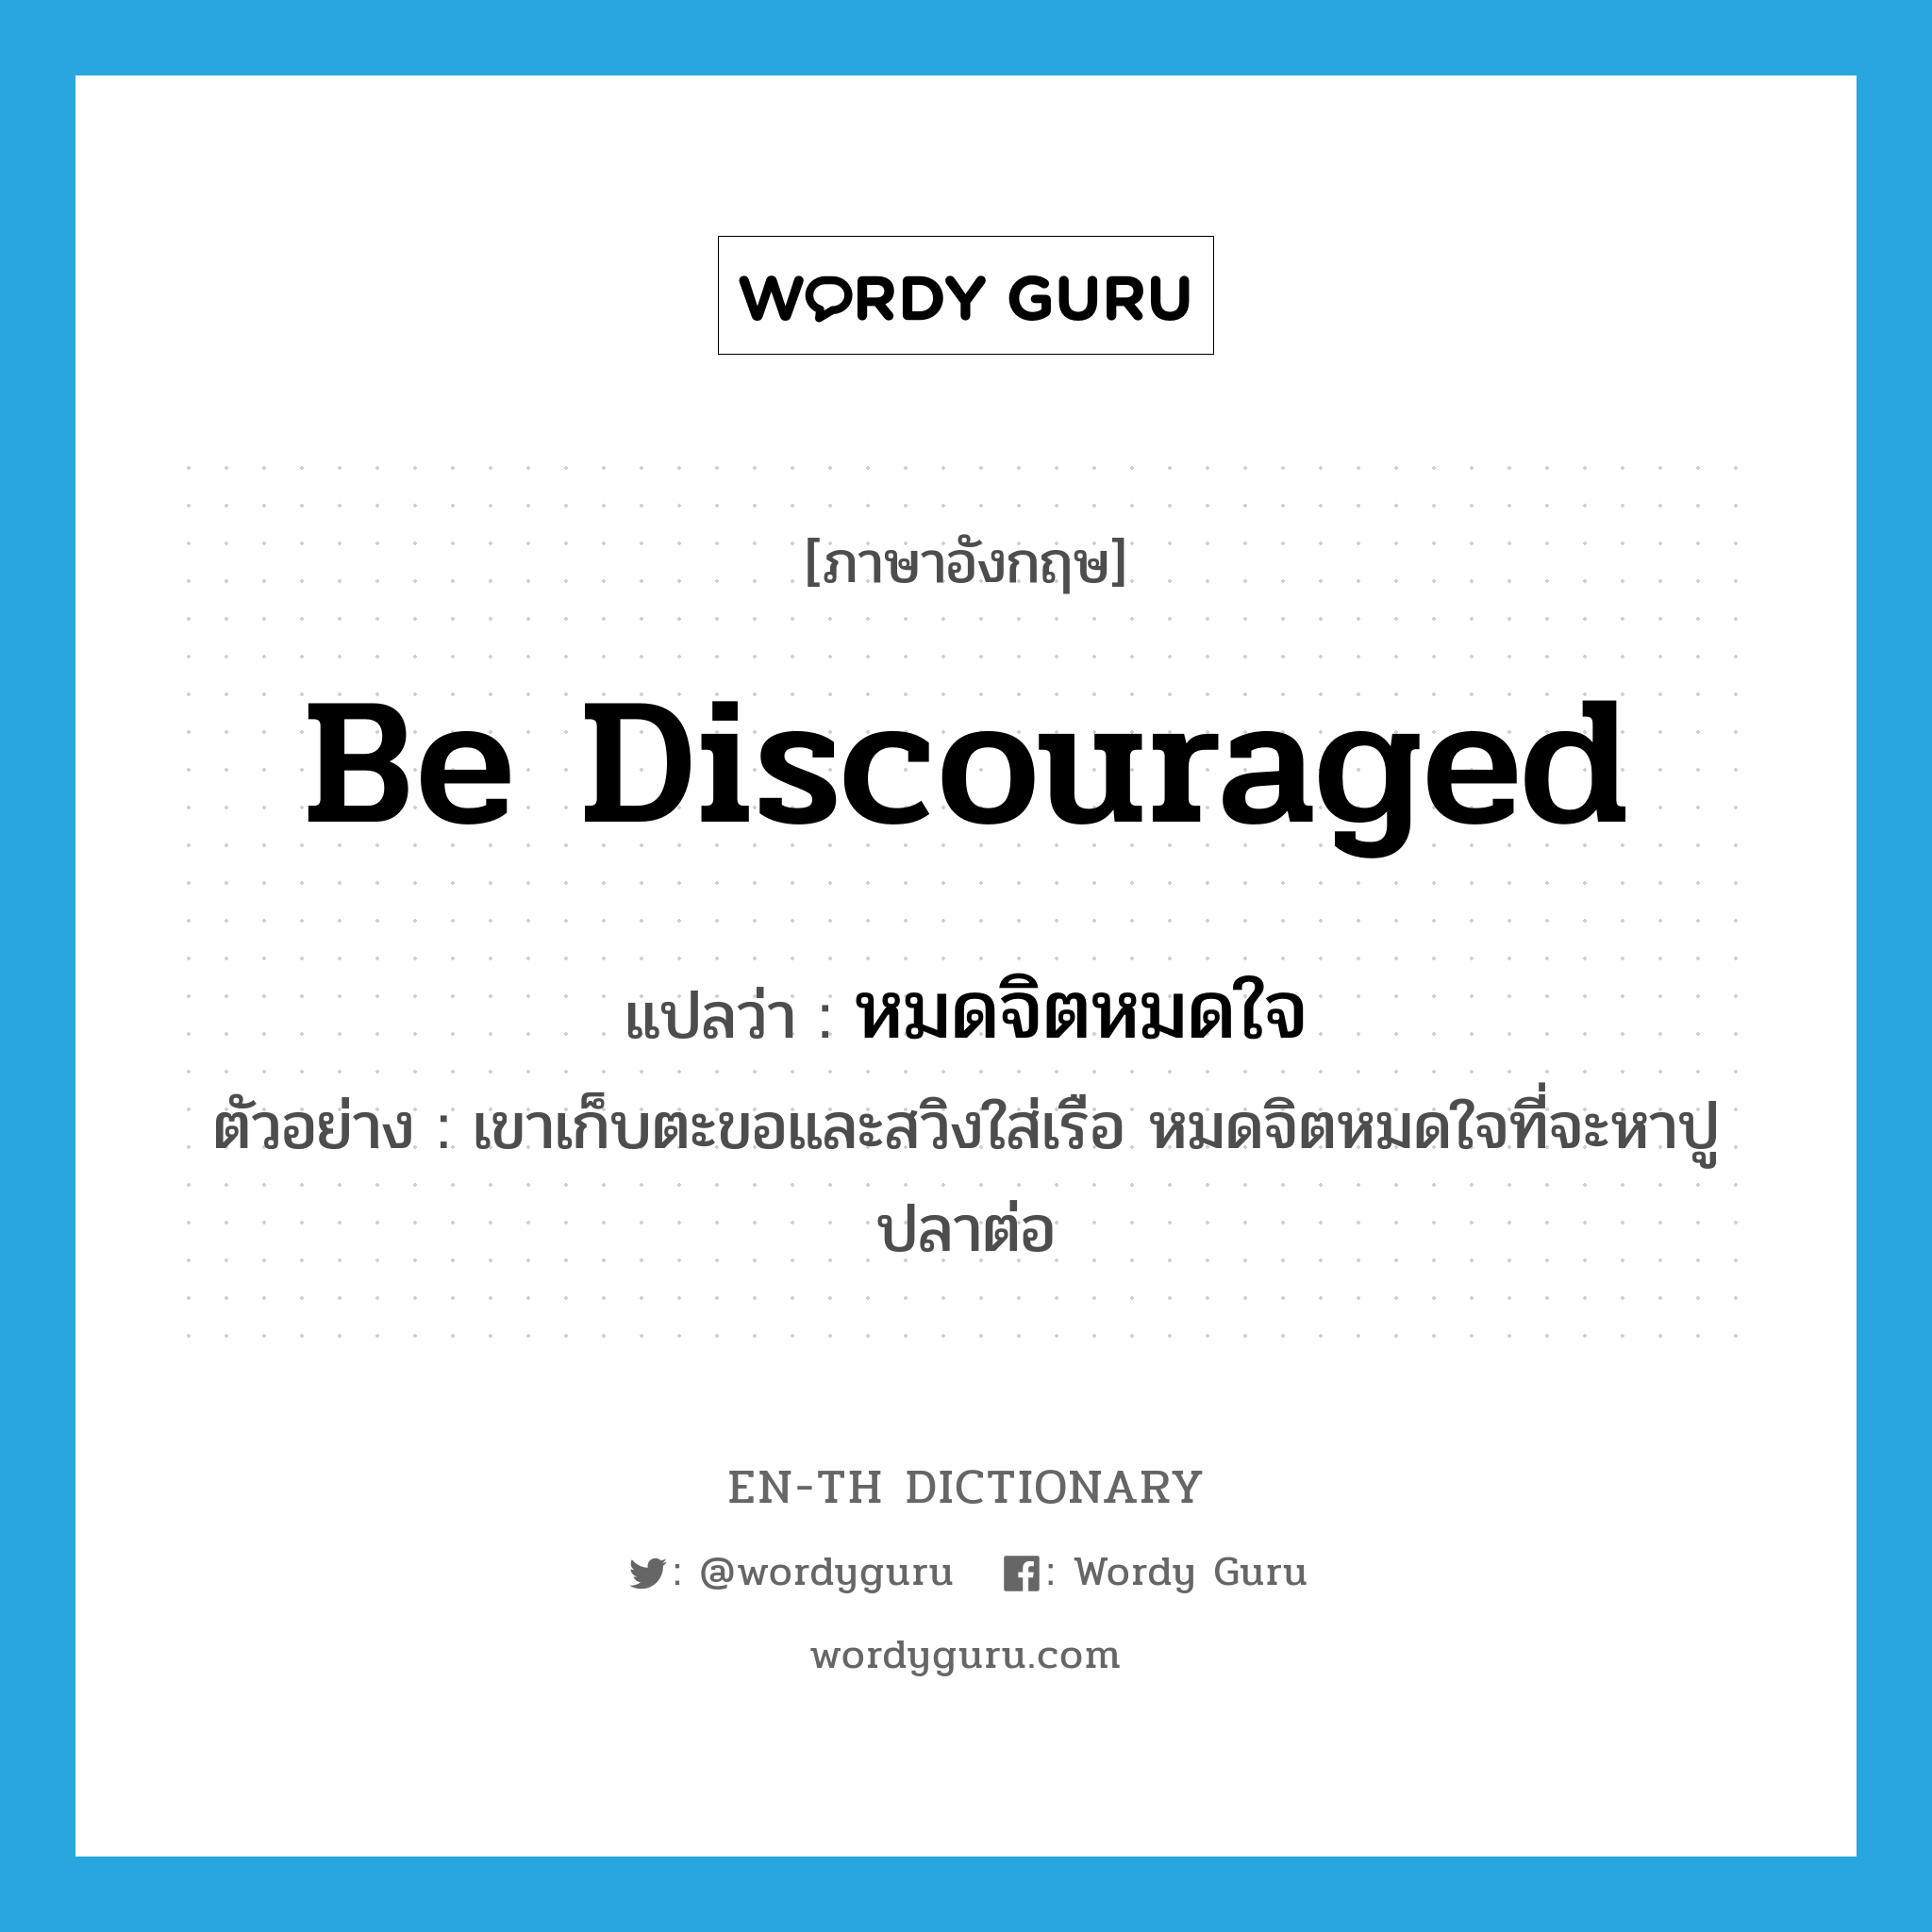 be discouraged แปลว่า?, คำศัพท์ภาษาอังกฤษ be discouraged แปลว่า หมดจิตหมดใจ ประเภท V ตัวอย่าง เขาเก็บตะขอและสวิงใส่เรือ หมดจิตหมดใจที่จะหาปูปลาต่อ หมวด V